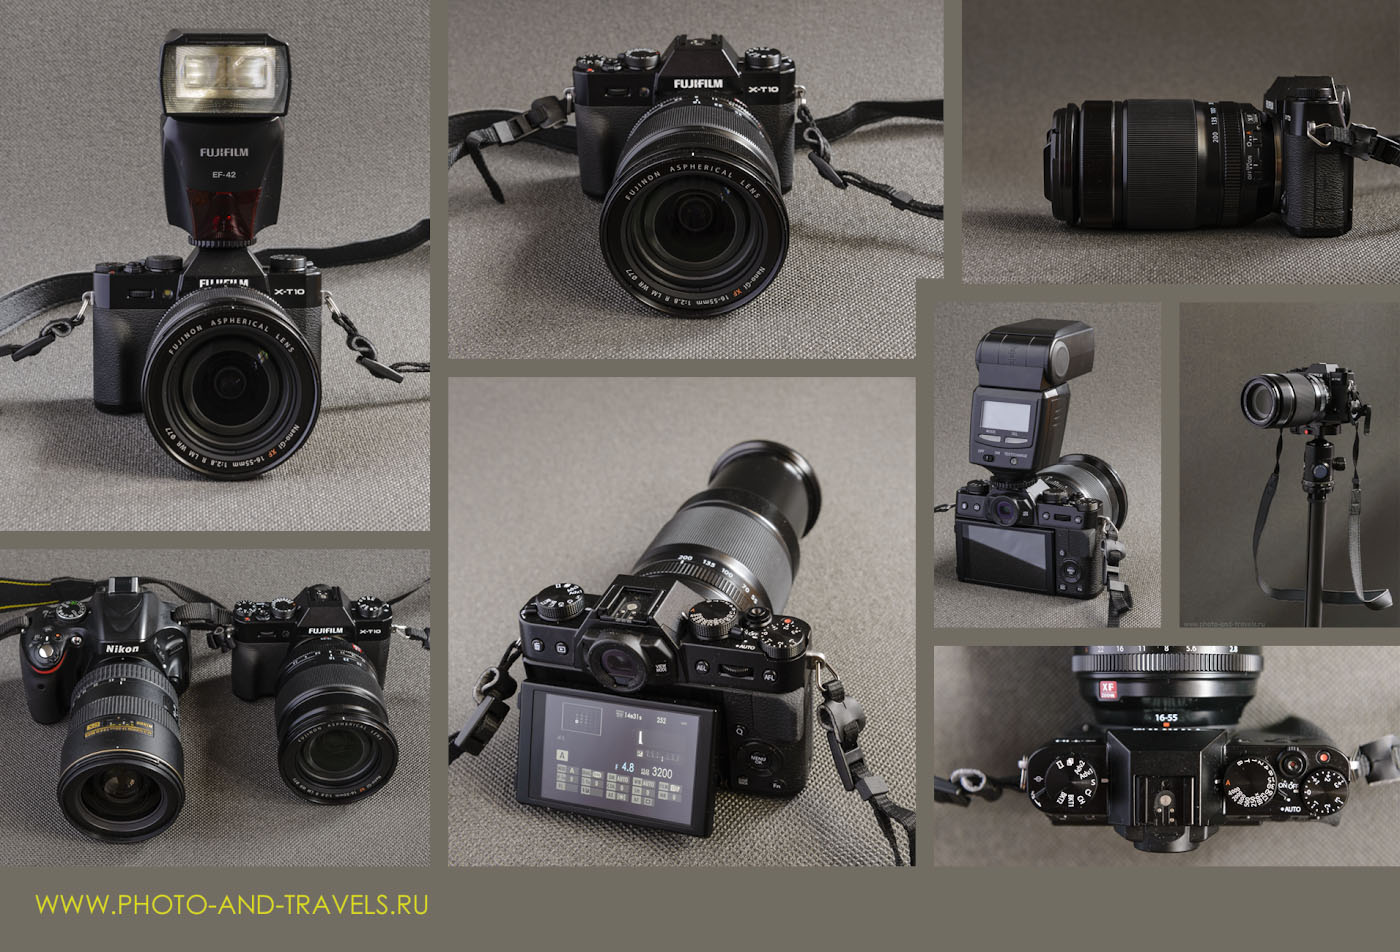 Фото 1. Внешний вид системной компактной камеры Fujifilm X-T10 со светосильным портретником Fujinon 16-50mm f/2.8 и с тёмным телеобъективом Fujifilm 55-200mm f/3.5-4.8, внешней вспышкой Fujifilm EF-42, на штативе Sirui T-2204X с головкой G-20KX. Аналогичное соотношение размеров будет у X-T20 и X-T30.